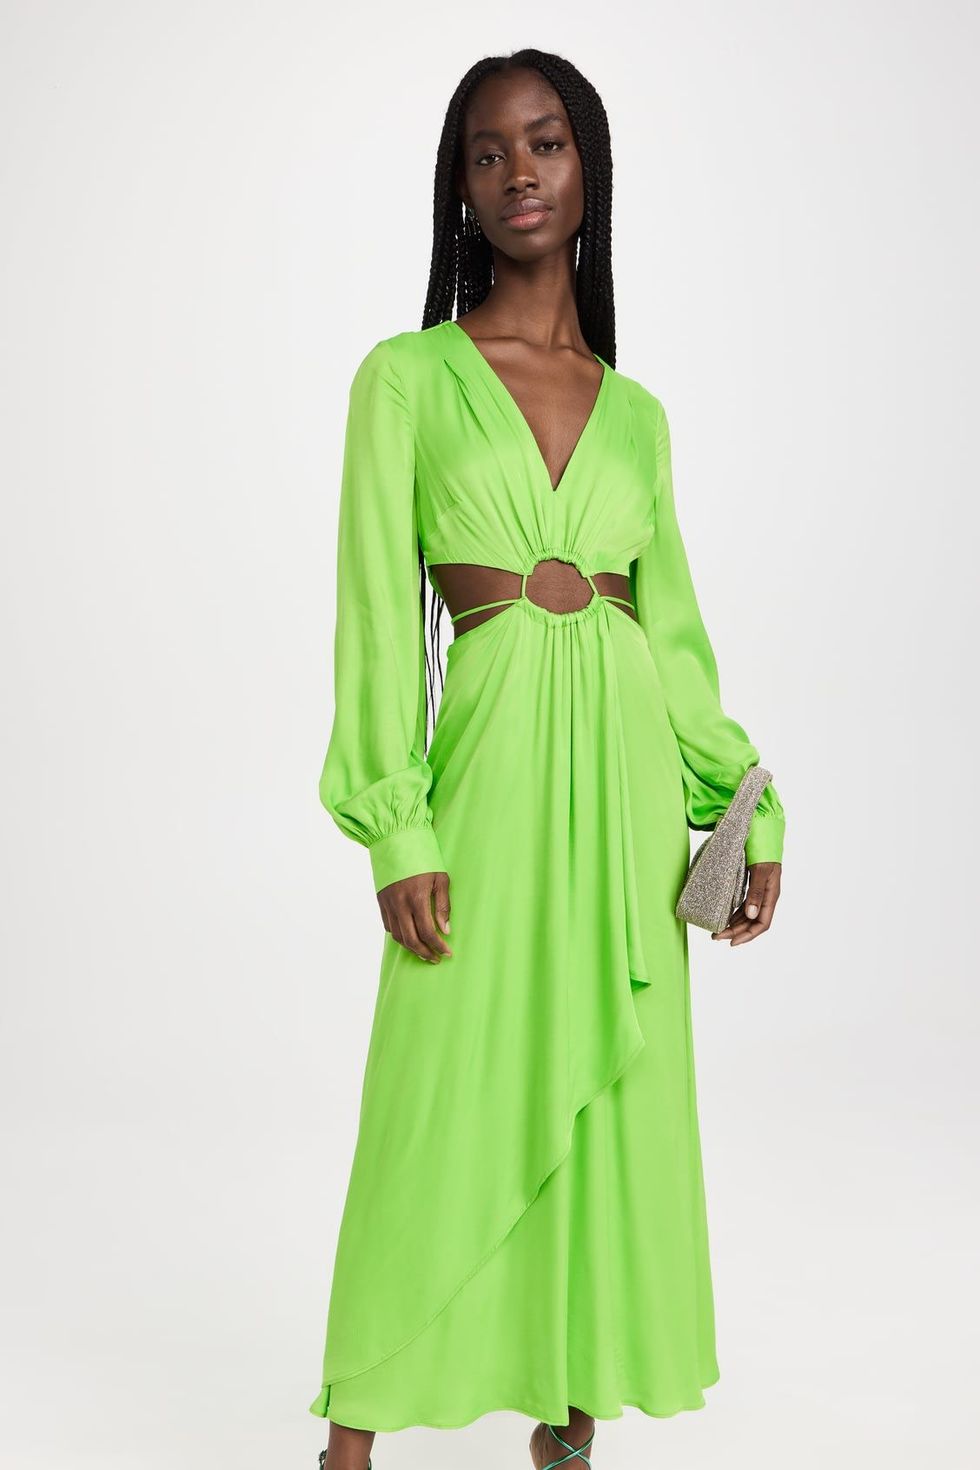 FARM Rio Lime Green Maxi Dress